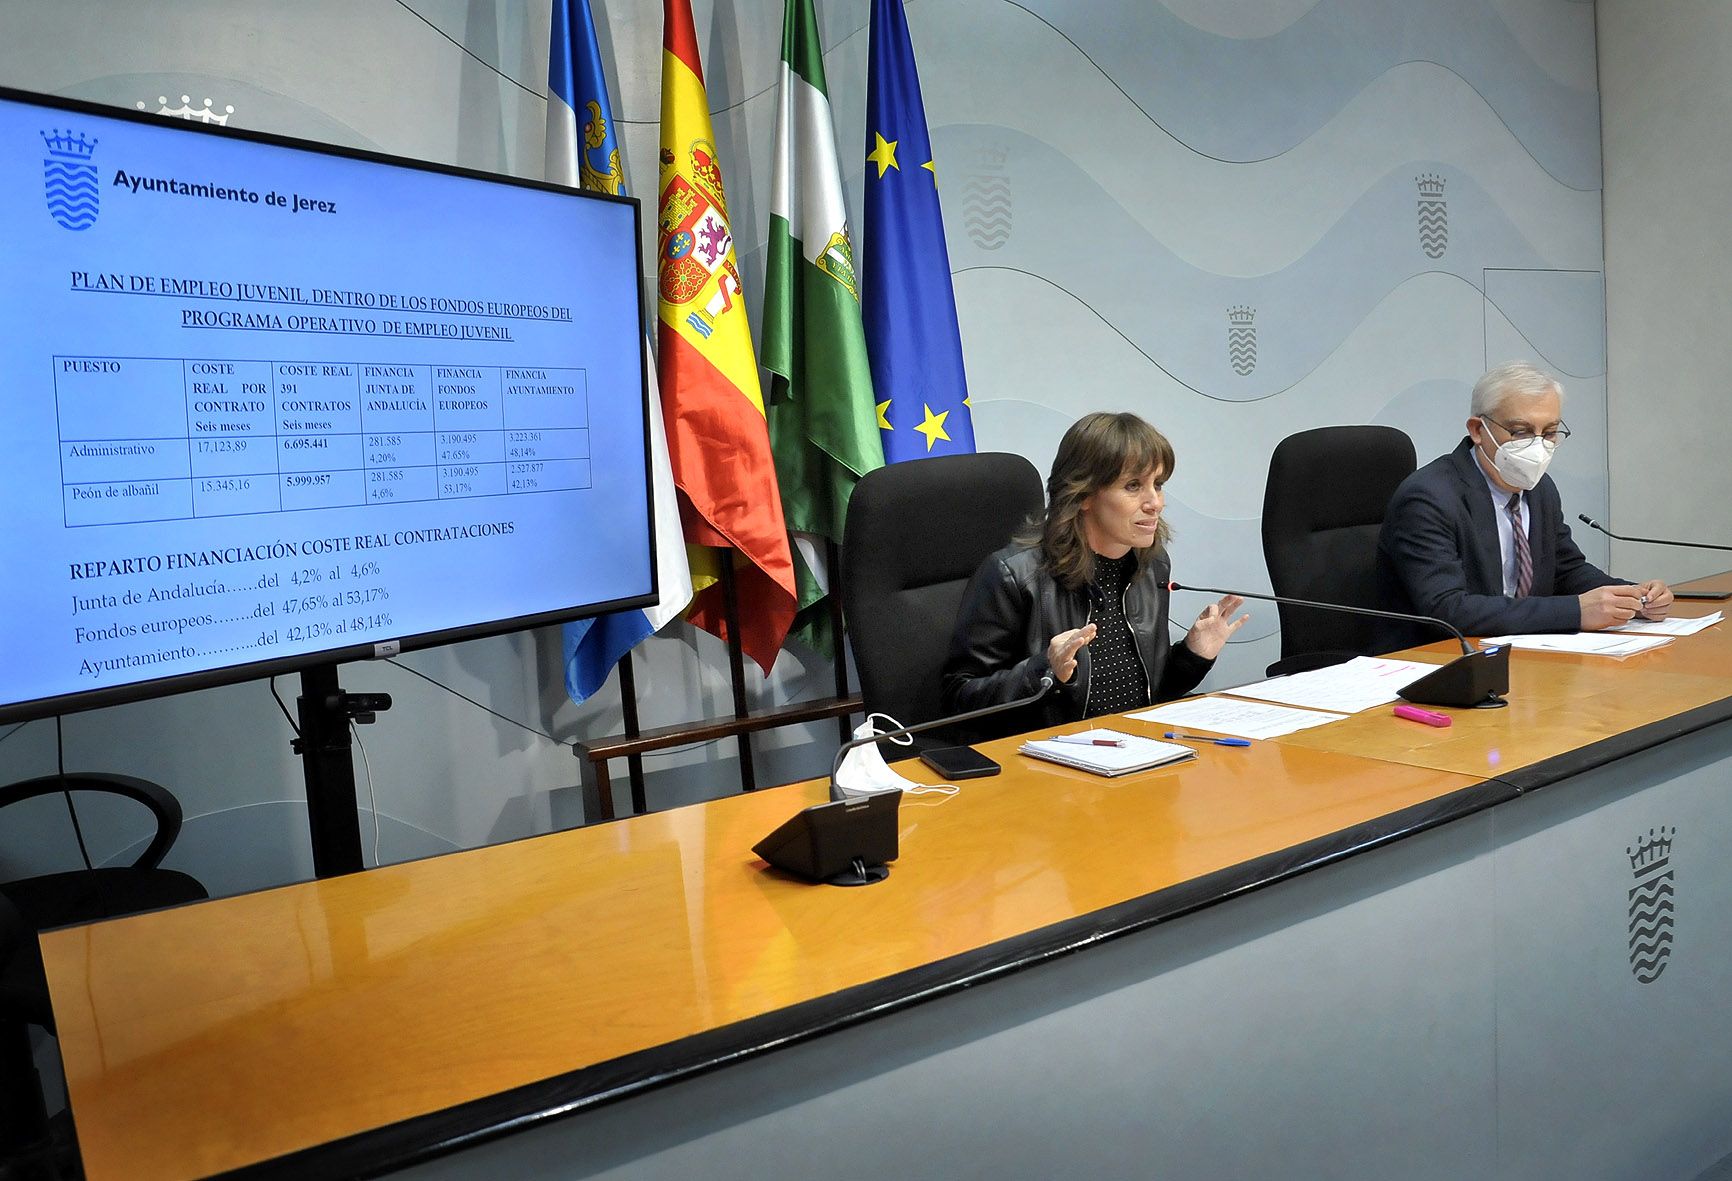 Laura Álvarez y Pablo Cabello, miembros del gobierno local de Jerez, en rueda de prensa hablando del plan de empleo juvenil.